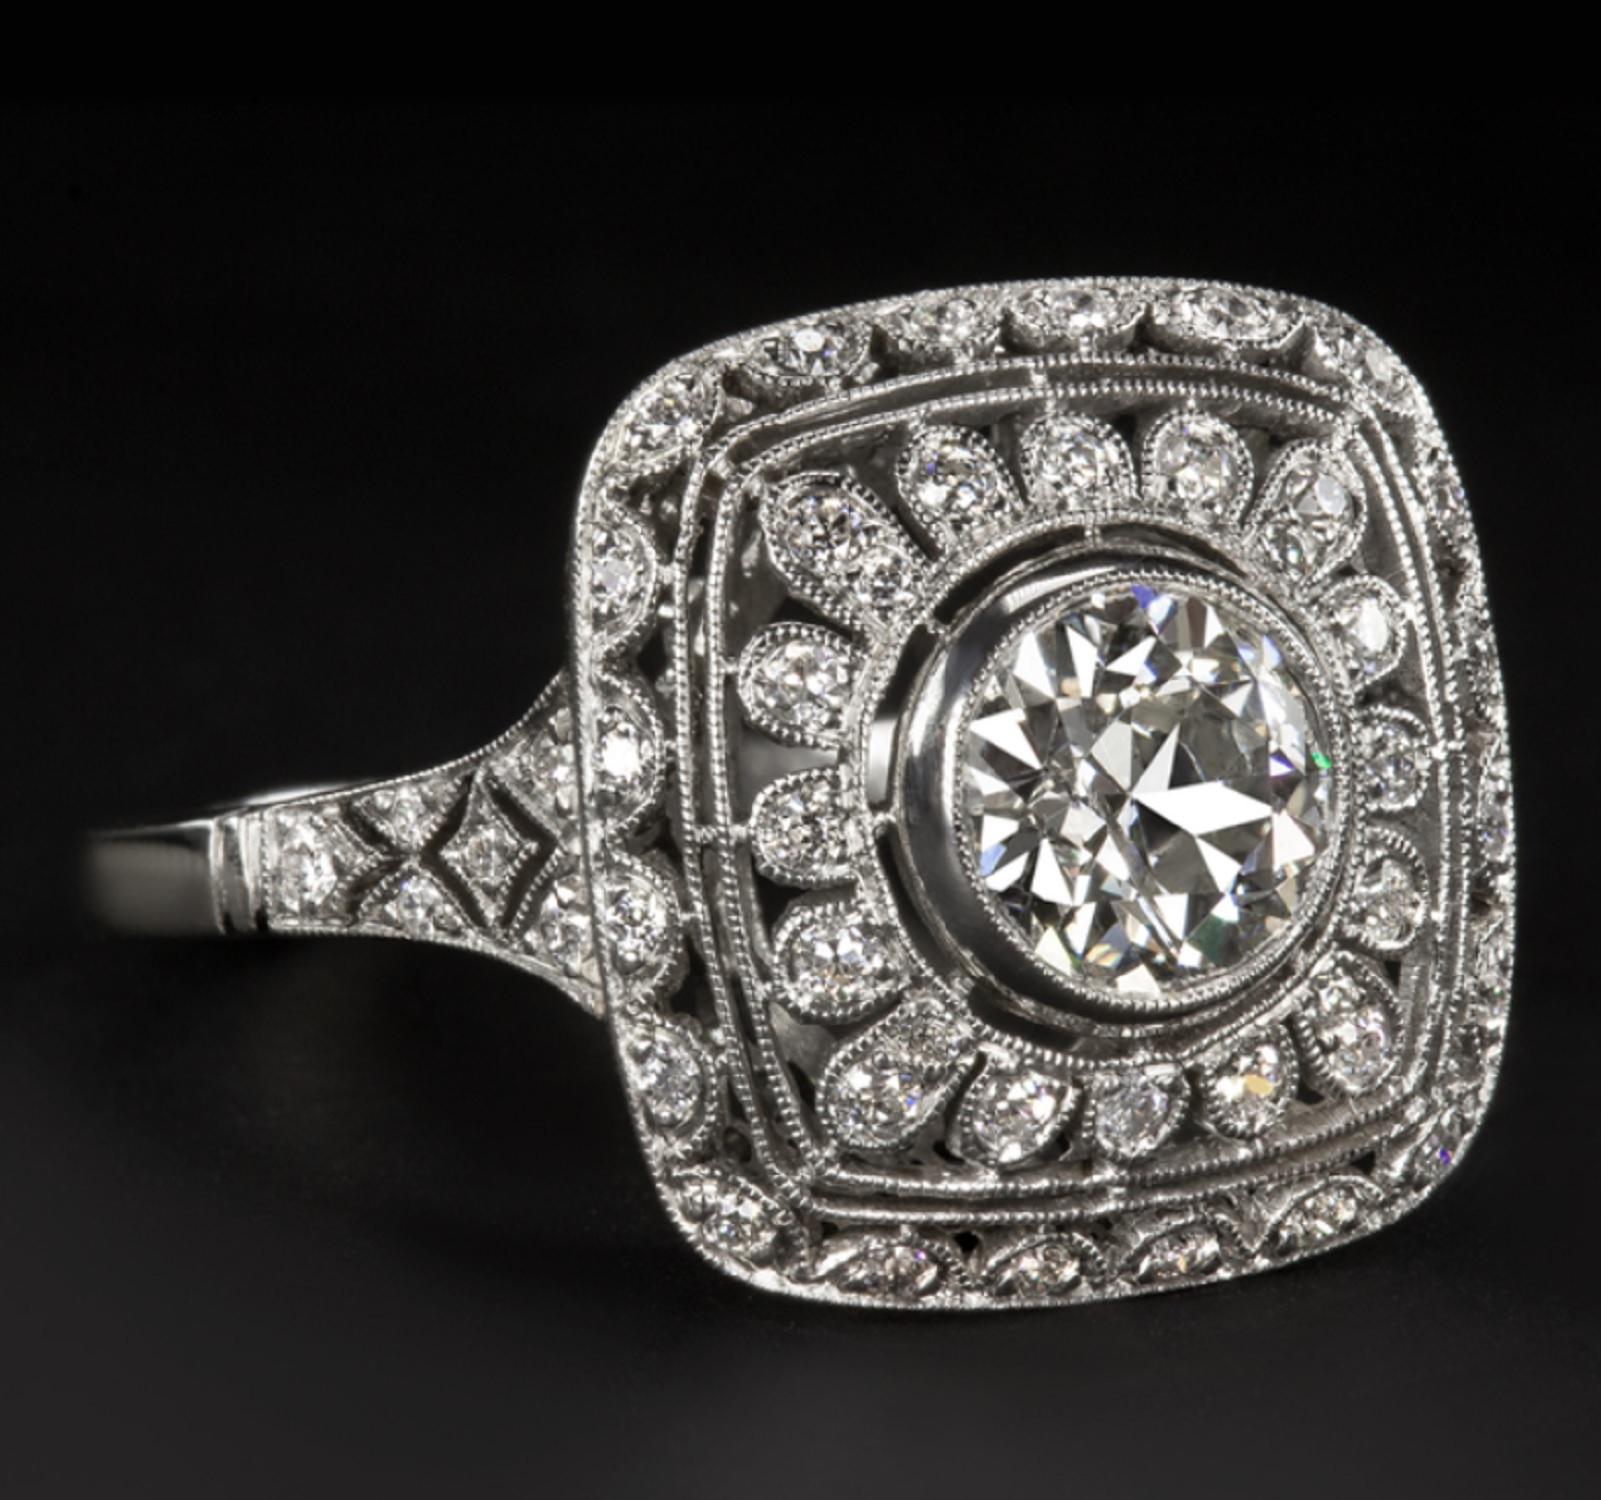 Exquisiter Diamantring mit einem phänomenal brillanten 1-Karat-Diamanten im alten europäischen Schliff, ergänzt durch eine detailreiche, mit Diamanten besetzte Platinfassung. Der feurige, wunderbar weiße und 100% augenreine Diamant in der Mitte